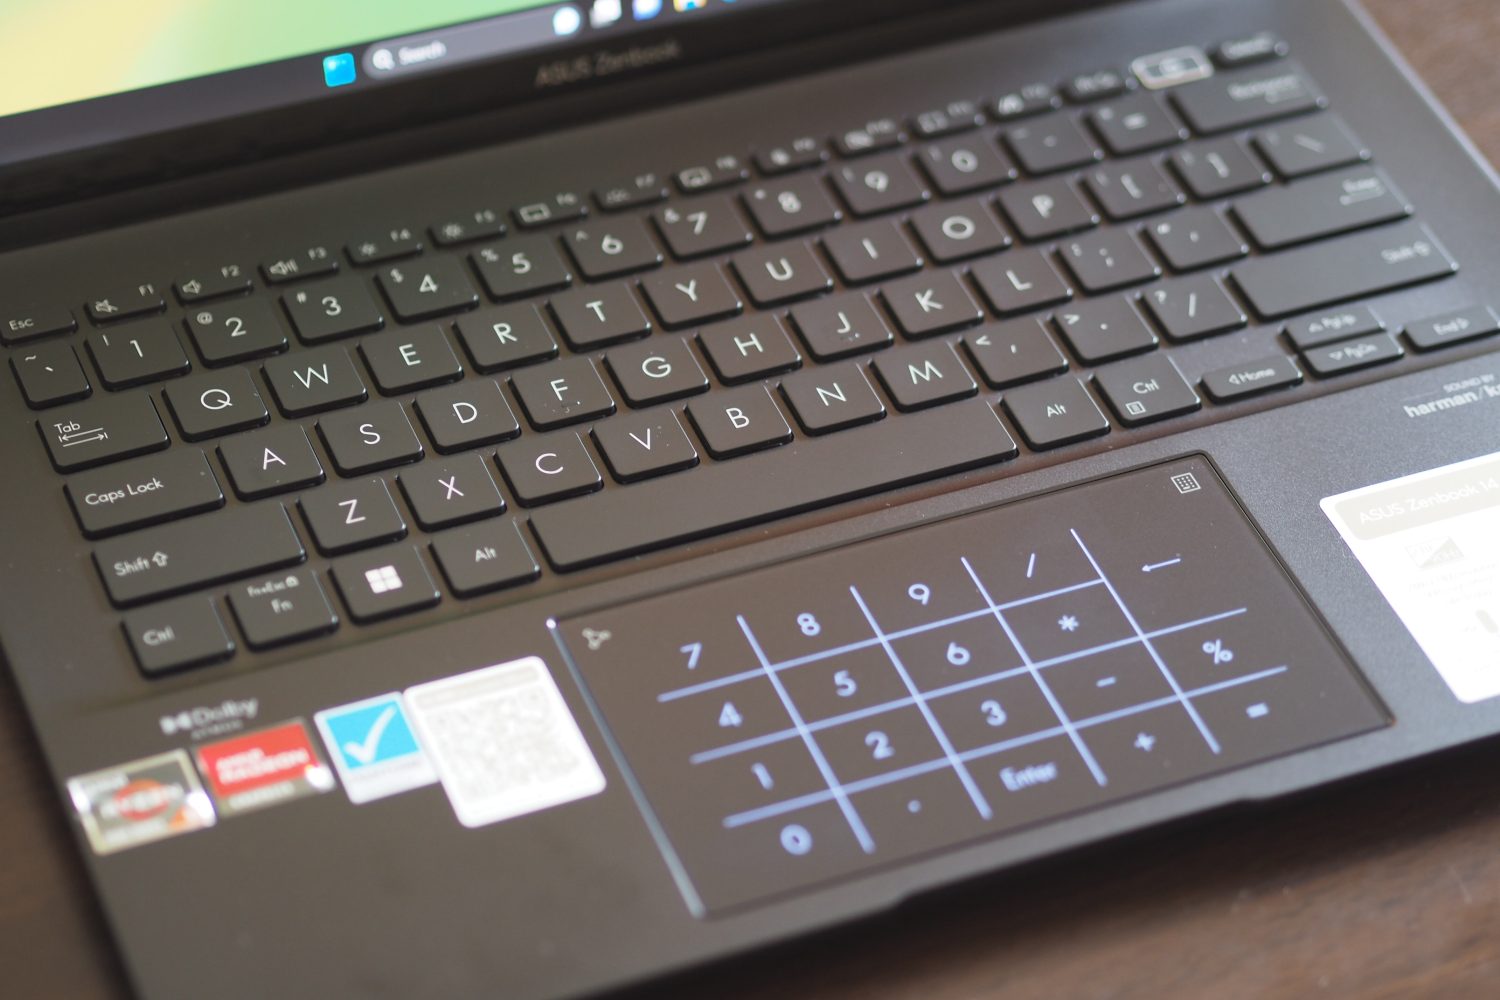 Vista superior do Asus ZenBook 14 OLED mostrando o teclado numérico LED.